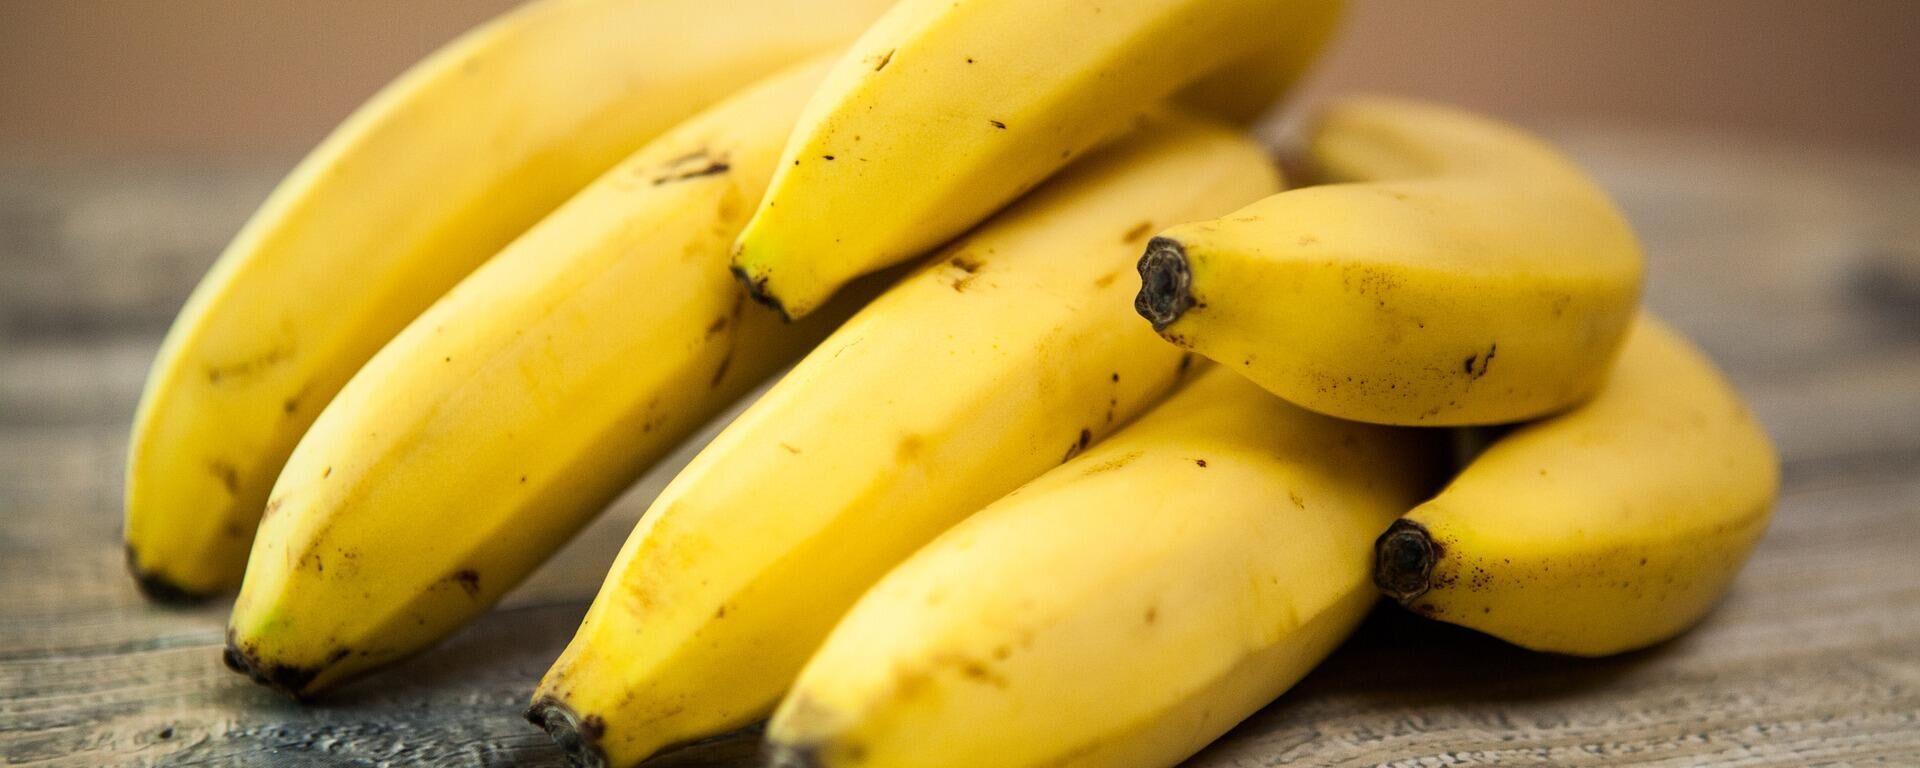 Bananas, plátanos - Sputnik Mundo, 1920, 06.09.2021